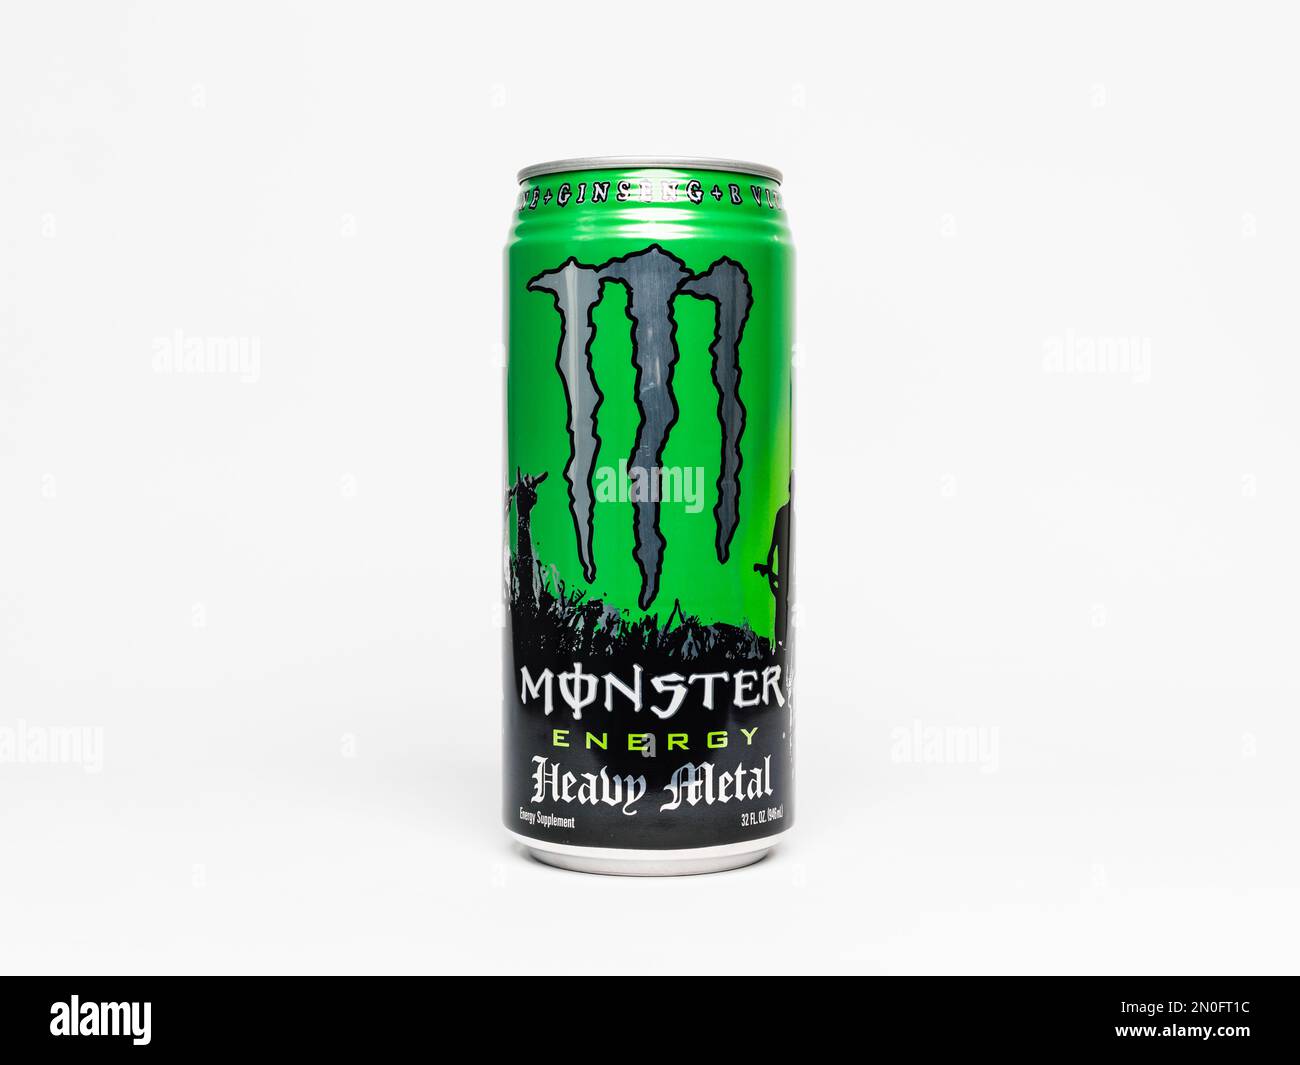 Boisson Monster Energy Heavy Metal « BFC » 32oz. Grande boisson énergétique peut dans la couleur verte dans un design de festival. La taille 946ml a été vendue sur le marché américain. Banque D'Images